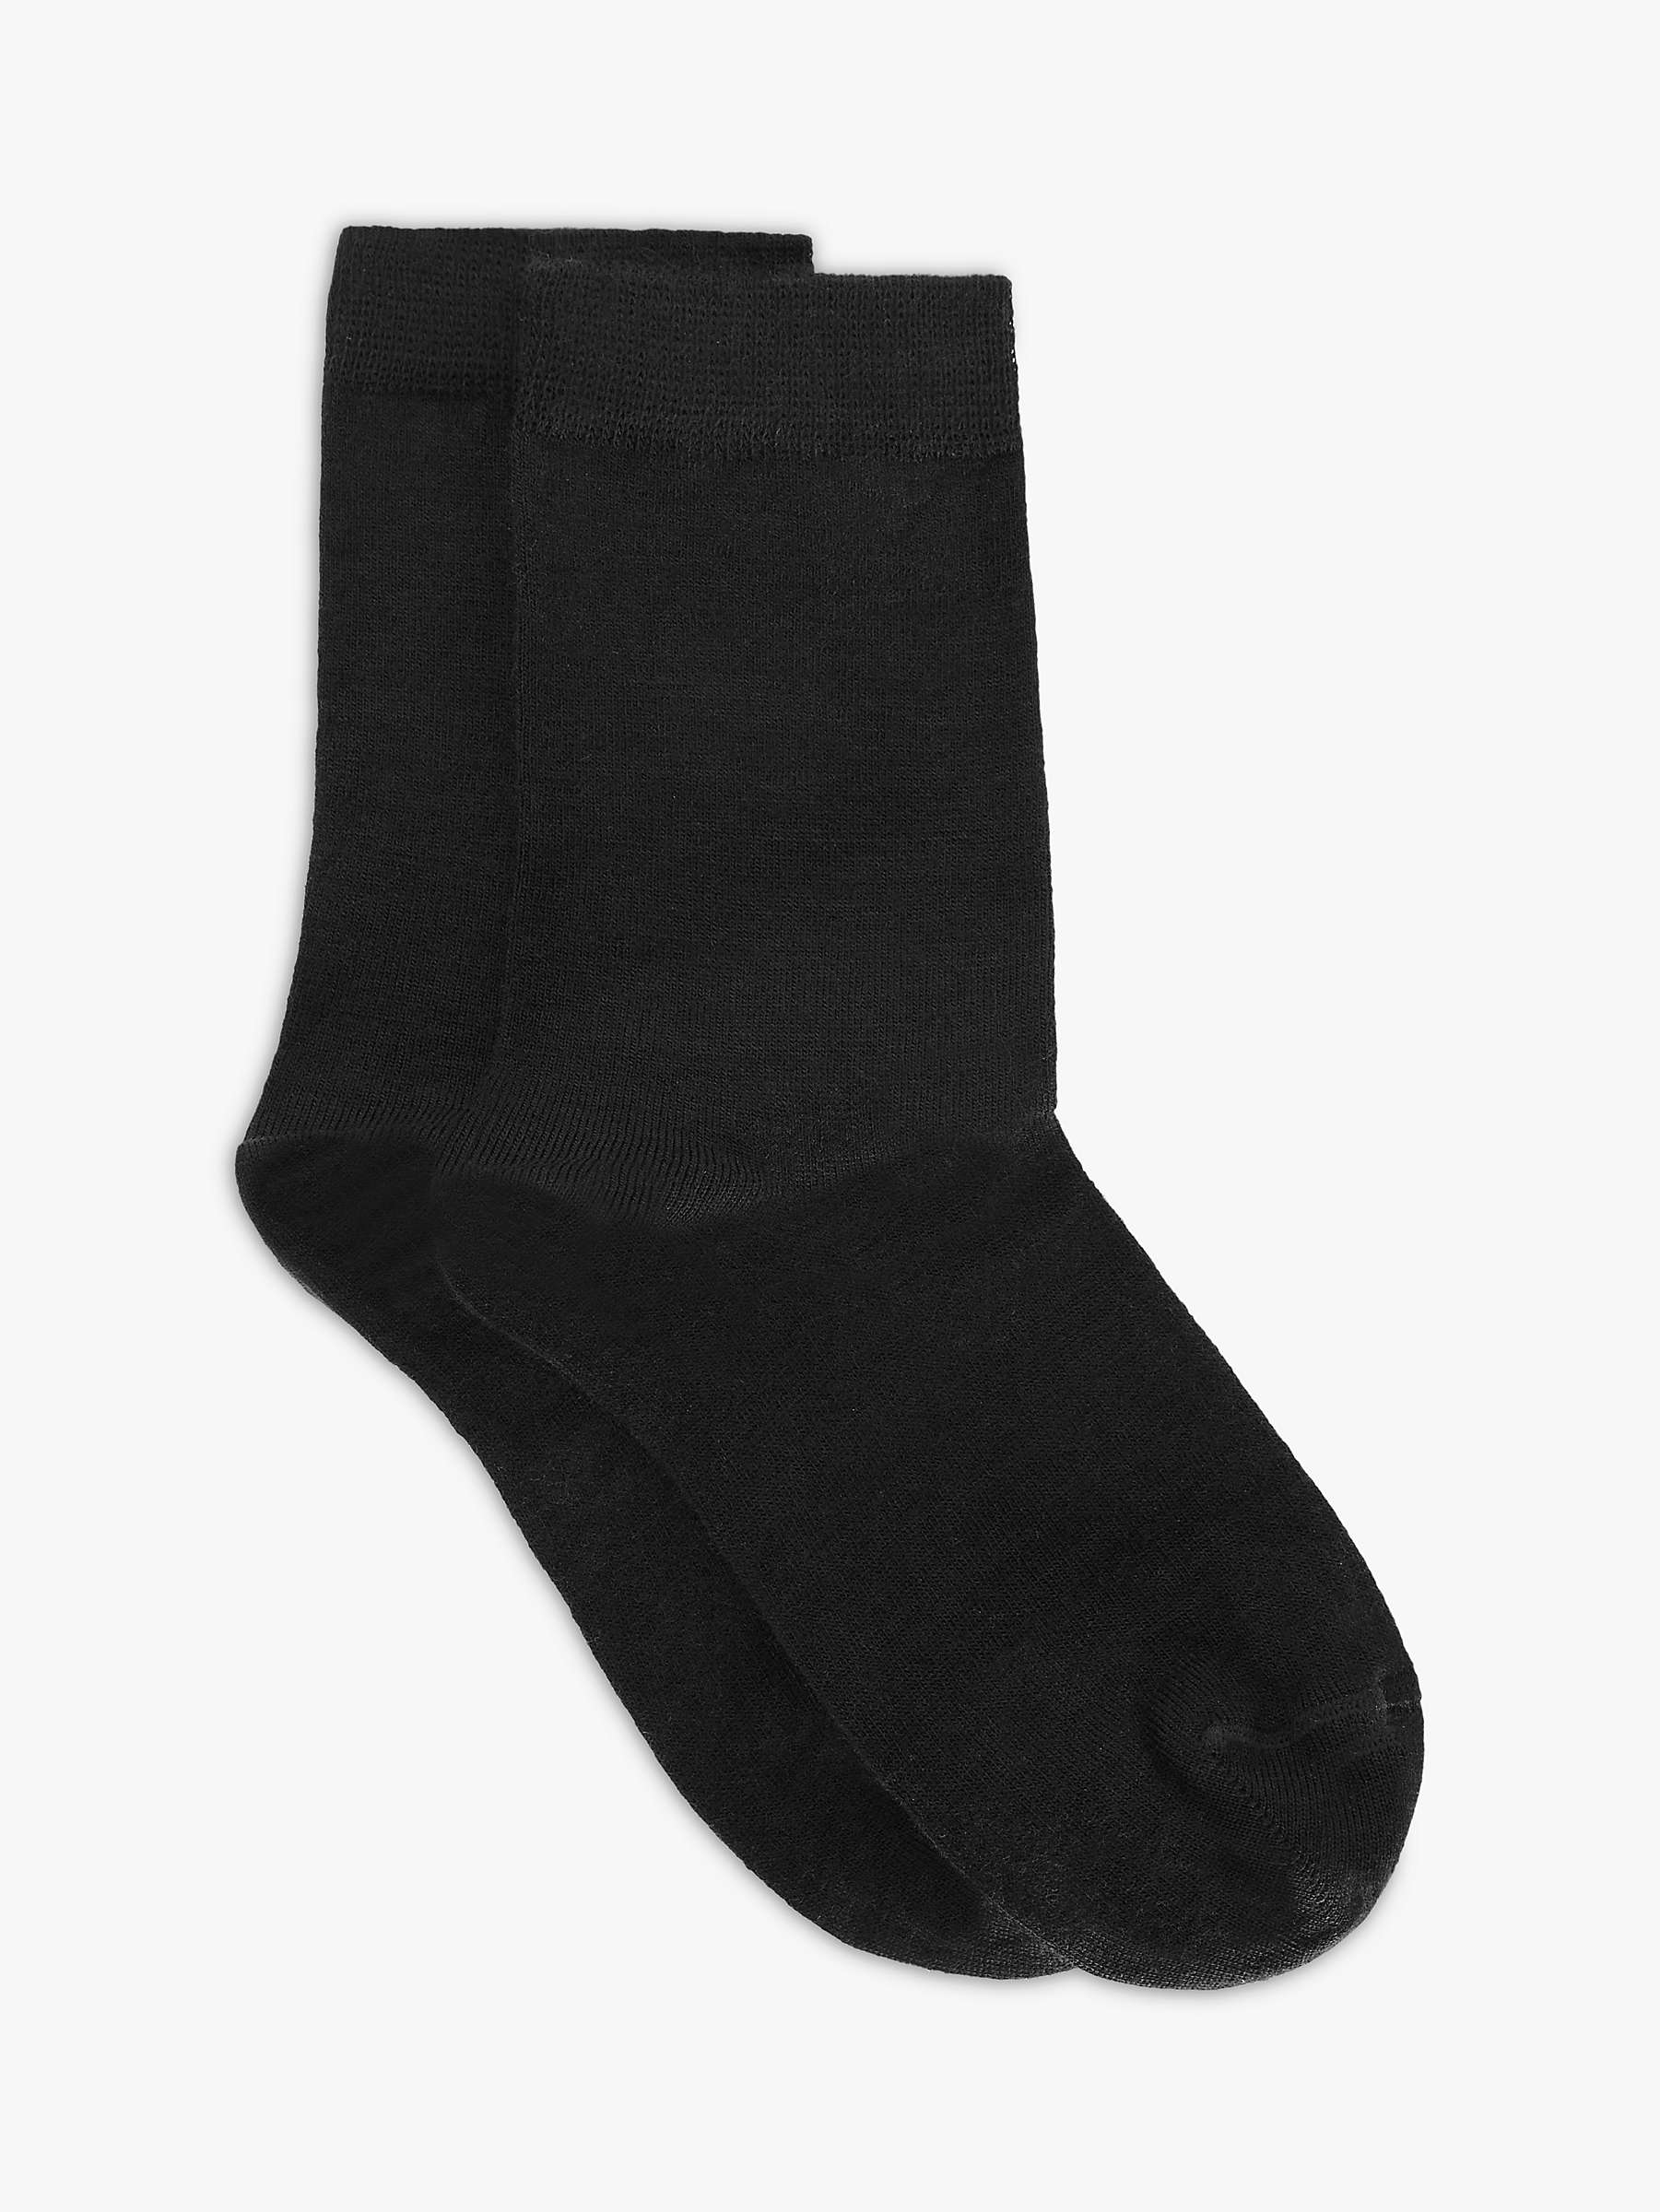 John Lewis & Partners Women's Merino Wool Mix Roll Top Ankle Socks ...